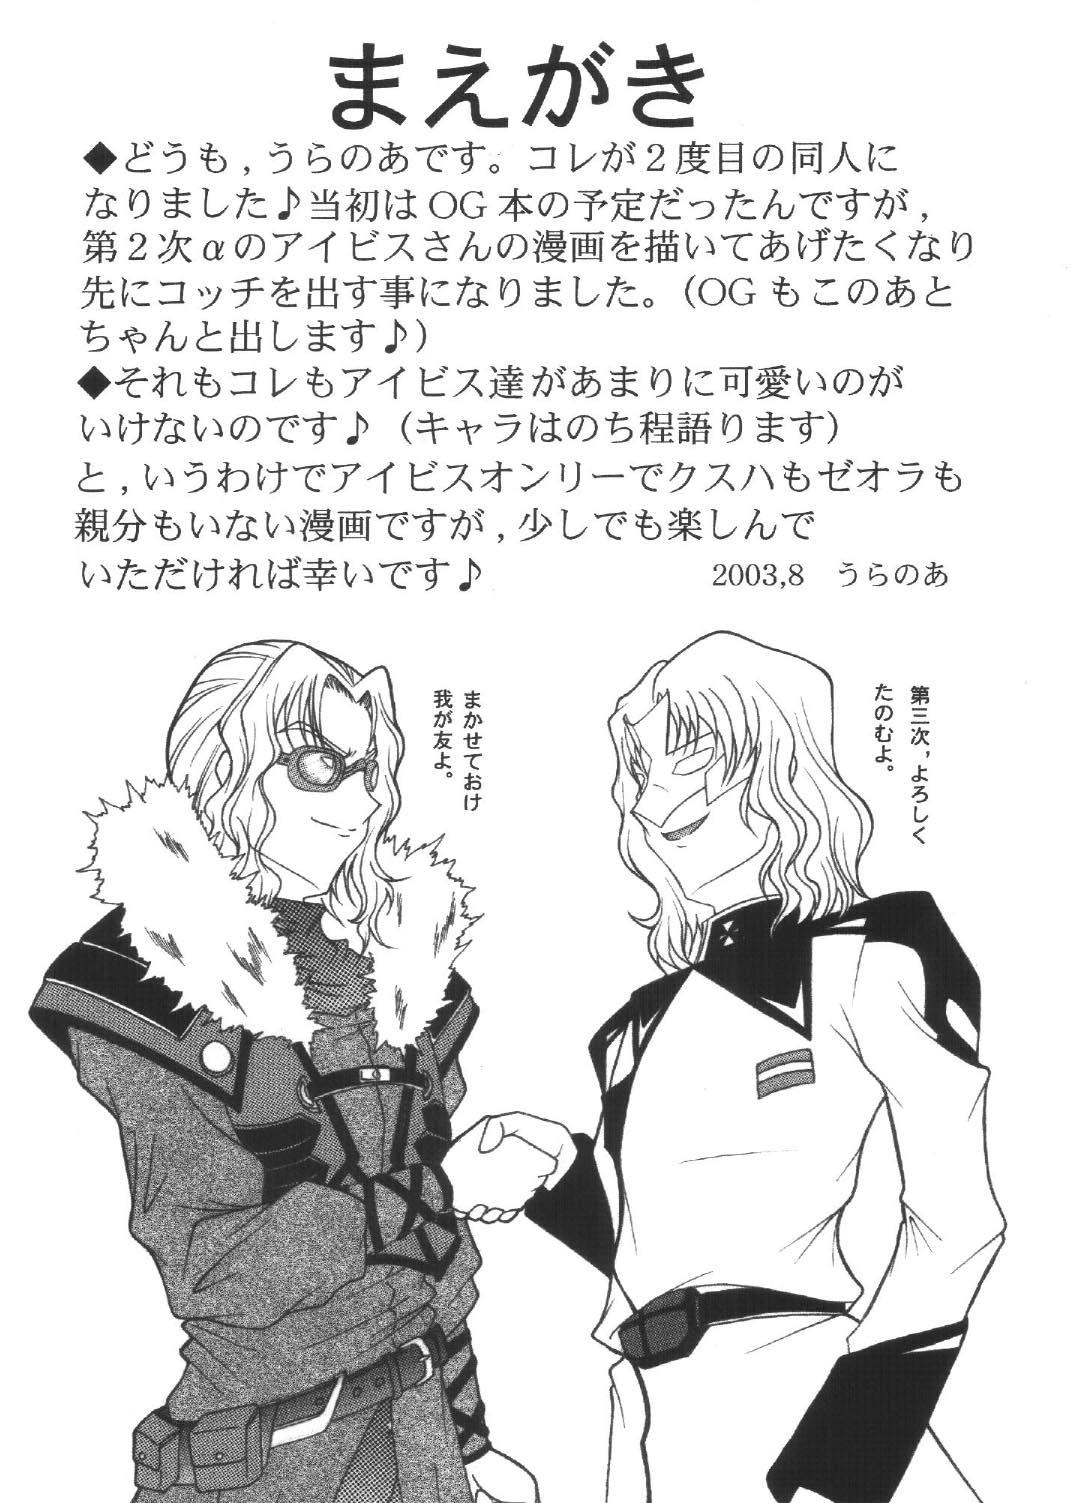 Real Couple Ryuusei, Yoru o Kirisai te Ver . X - Super robot wars Novia - Page 4